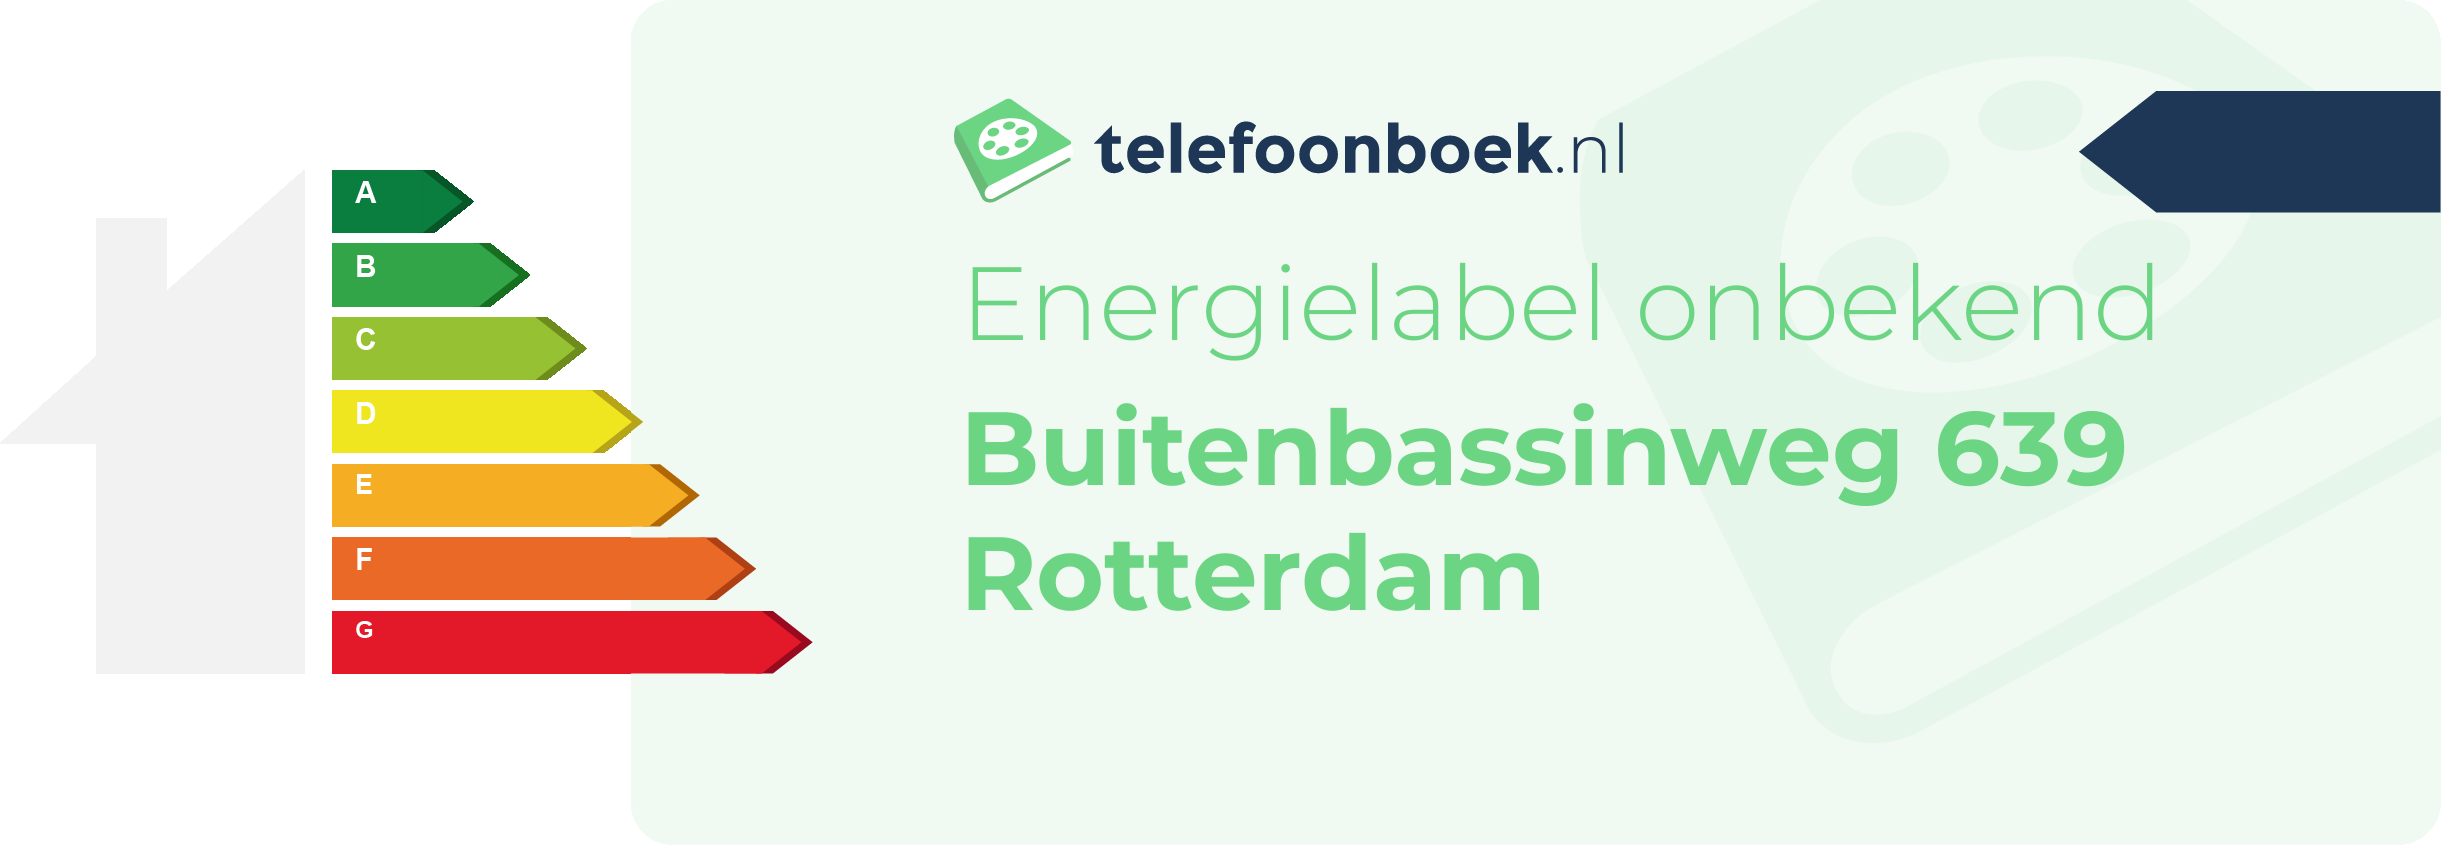 Energielabel Buitenbassinweg 639 Rotterdam